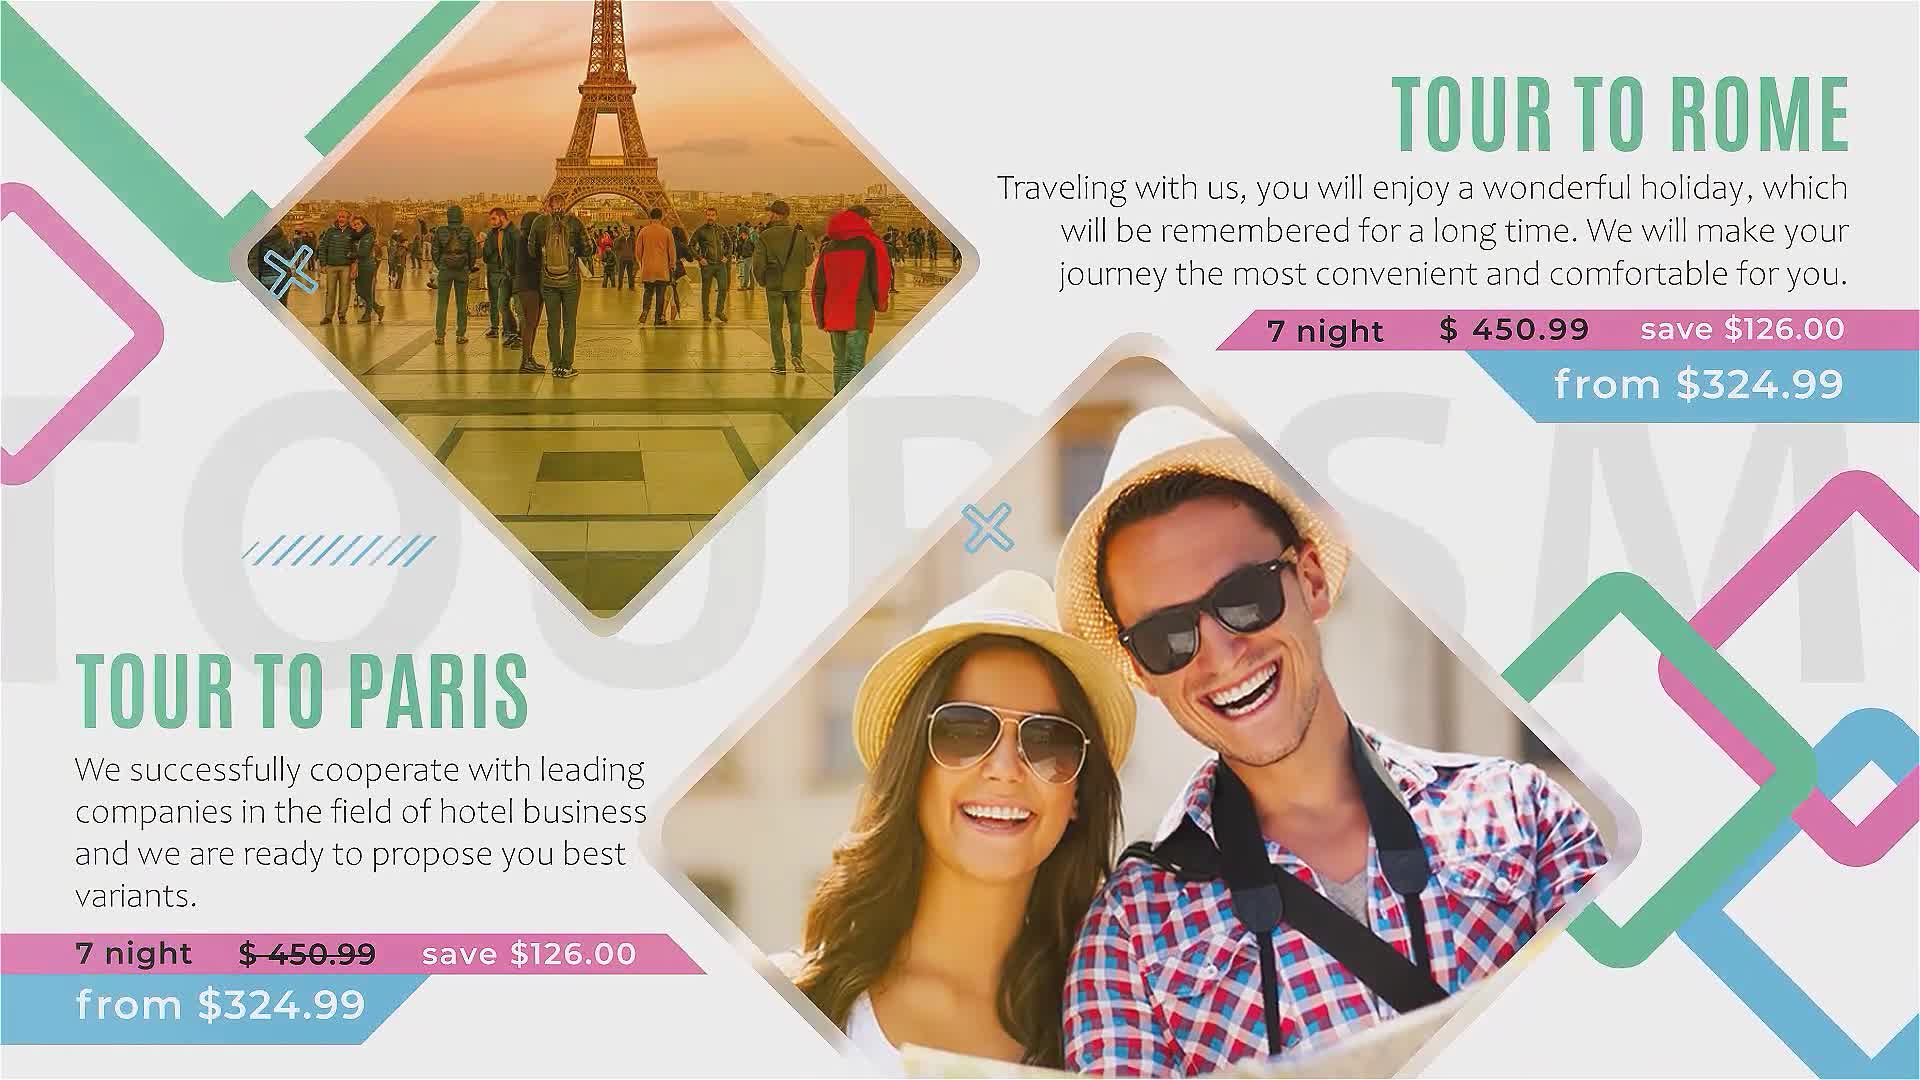  Tourist Agency Promo 